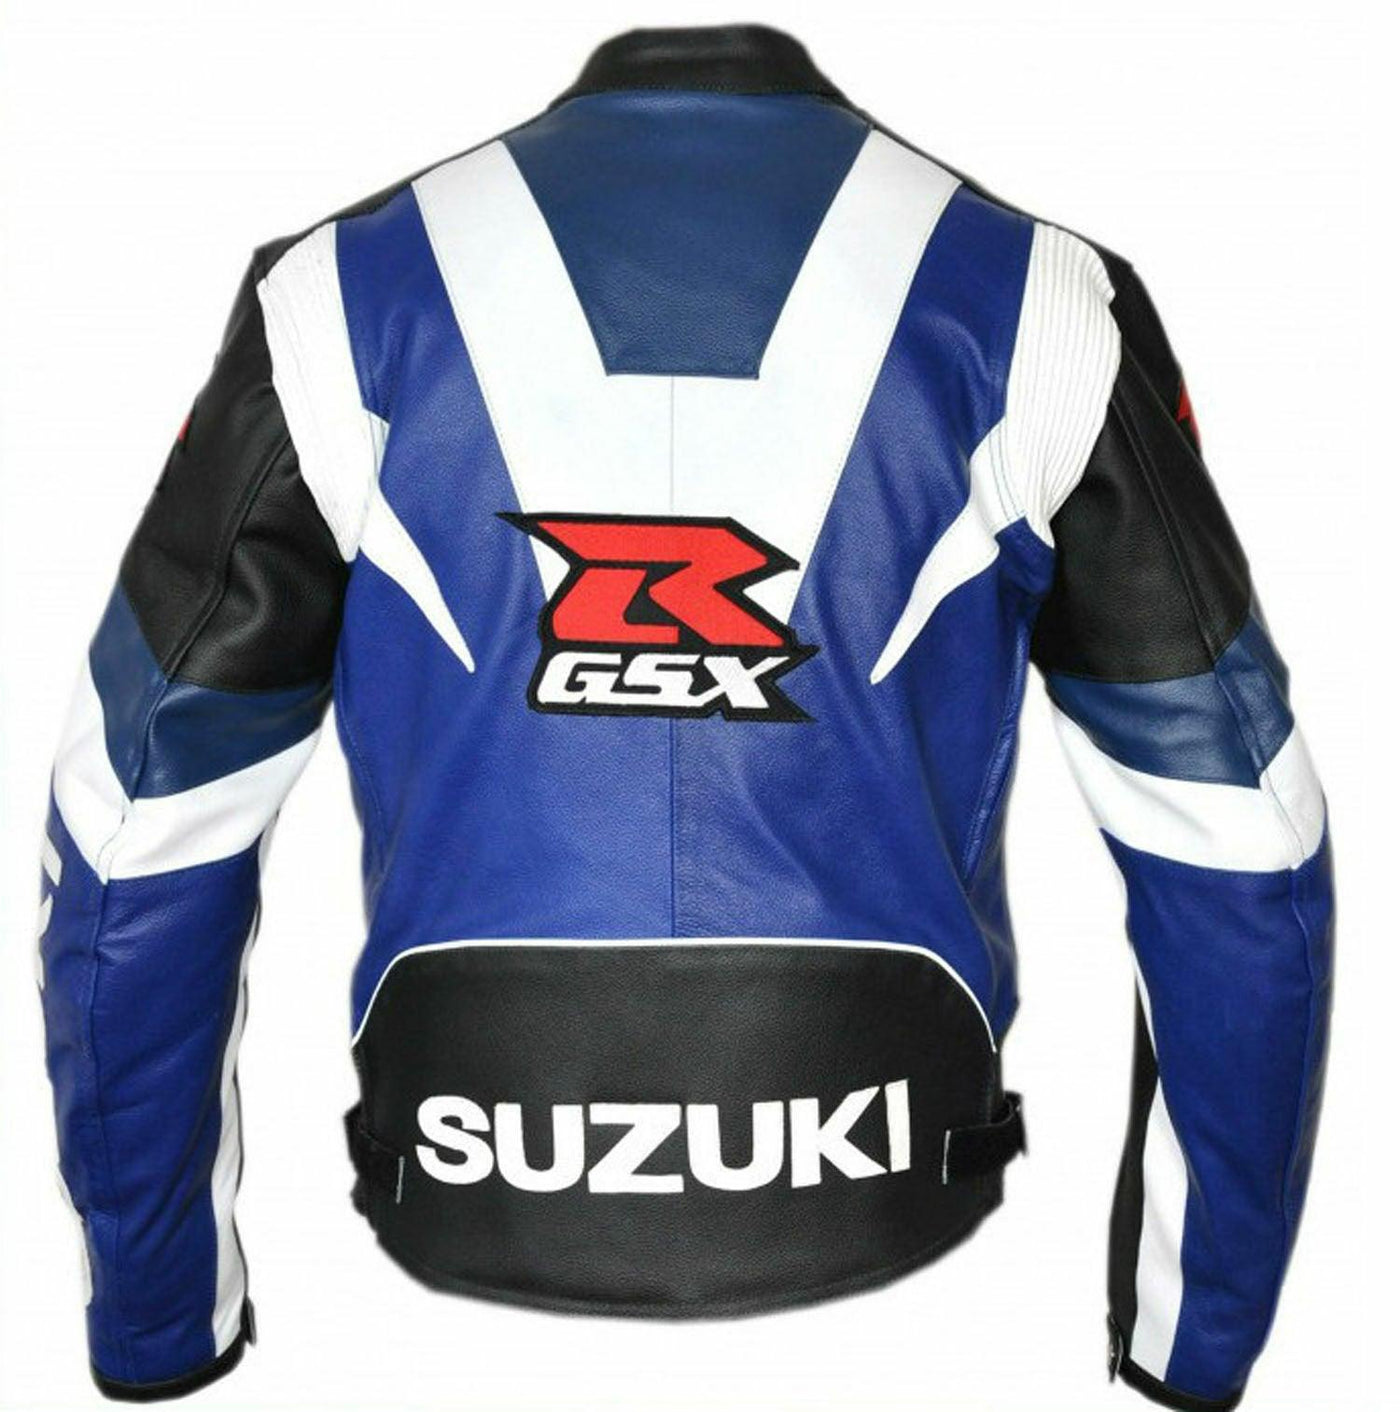 ZMJ-054 Racing Motorbike/Motorcycle Leather Jacket Custom Made Jacket For Bikers - ZEES MOTOR SPORTS